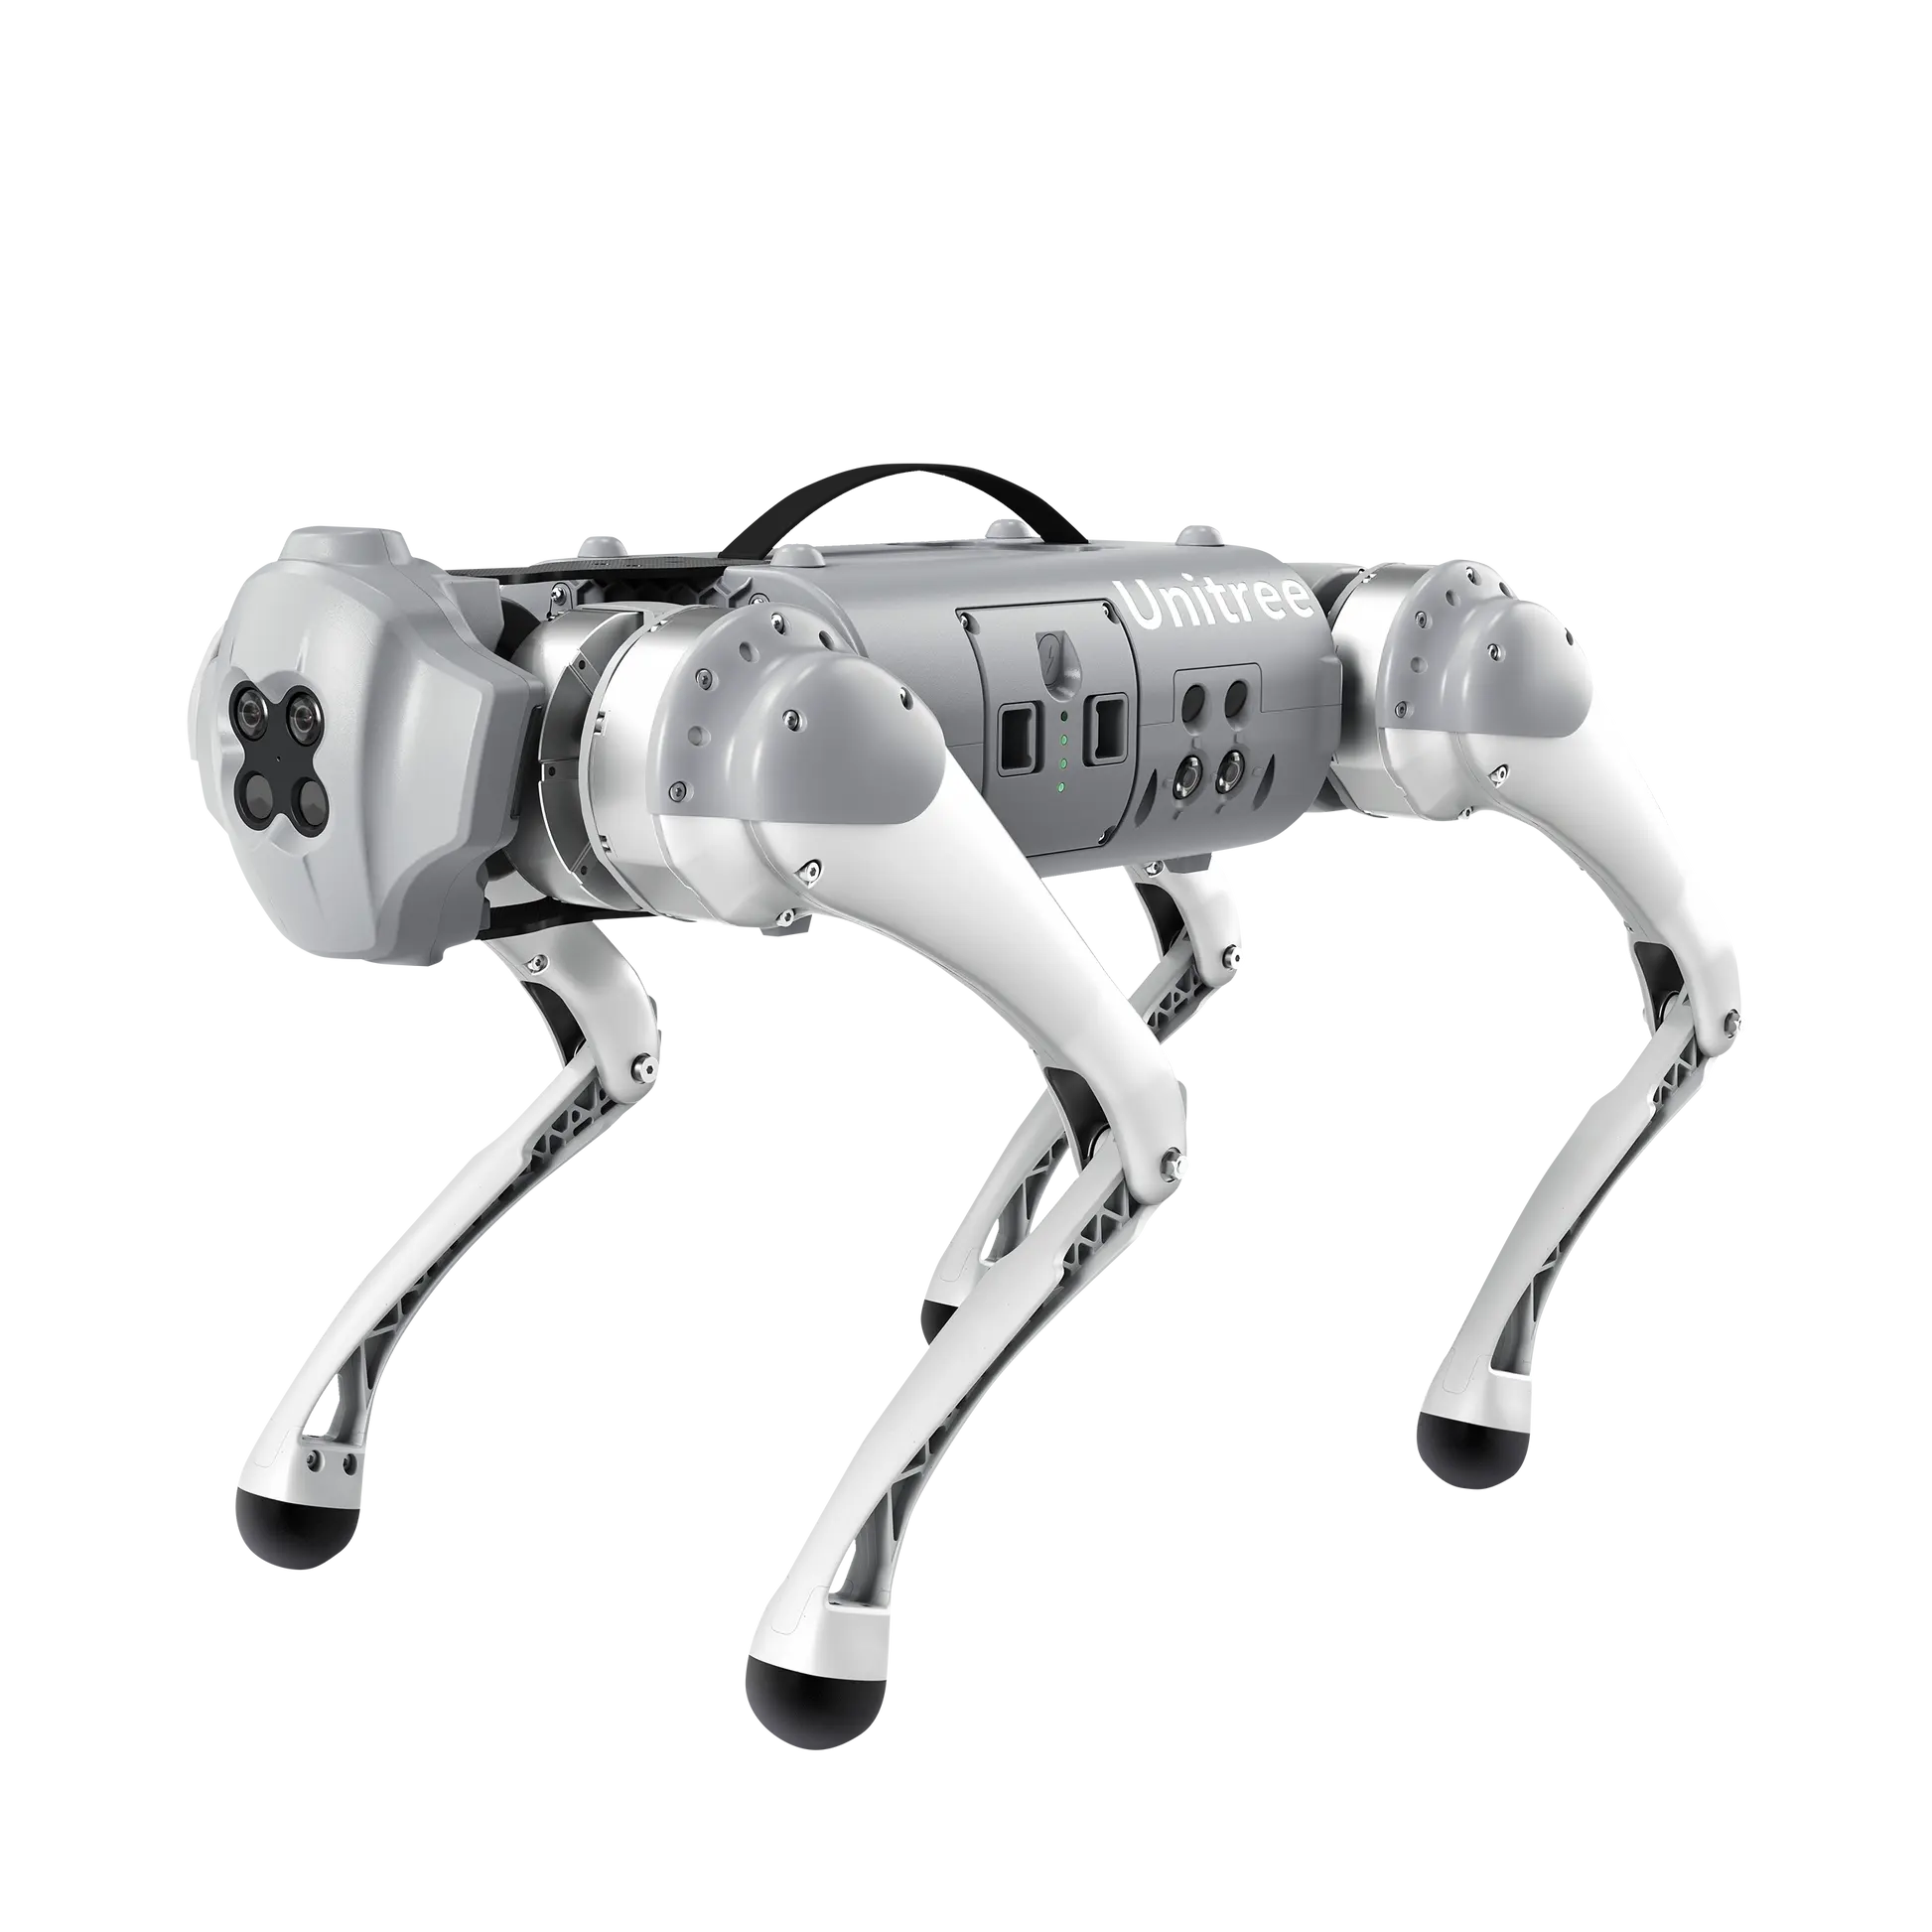 Умный робот Unitree Bionic, сопровождающий Улучшенный робот-собаку, интерактивный робот человека-компьютера, квадрупед, техника